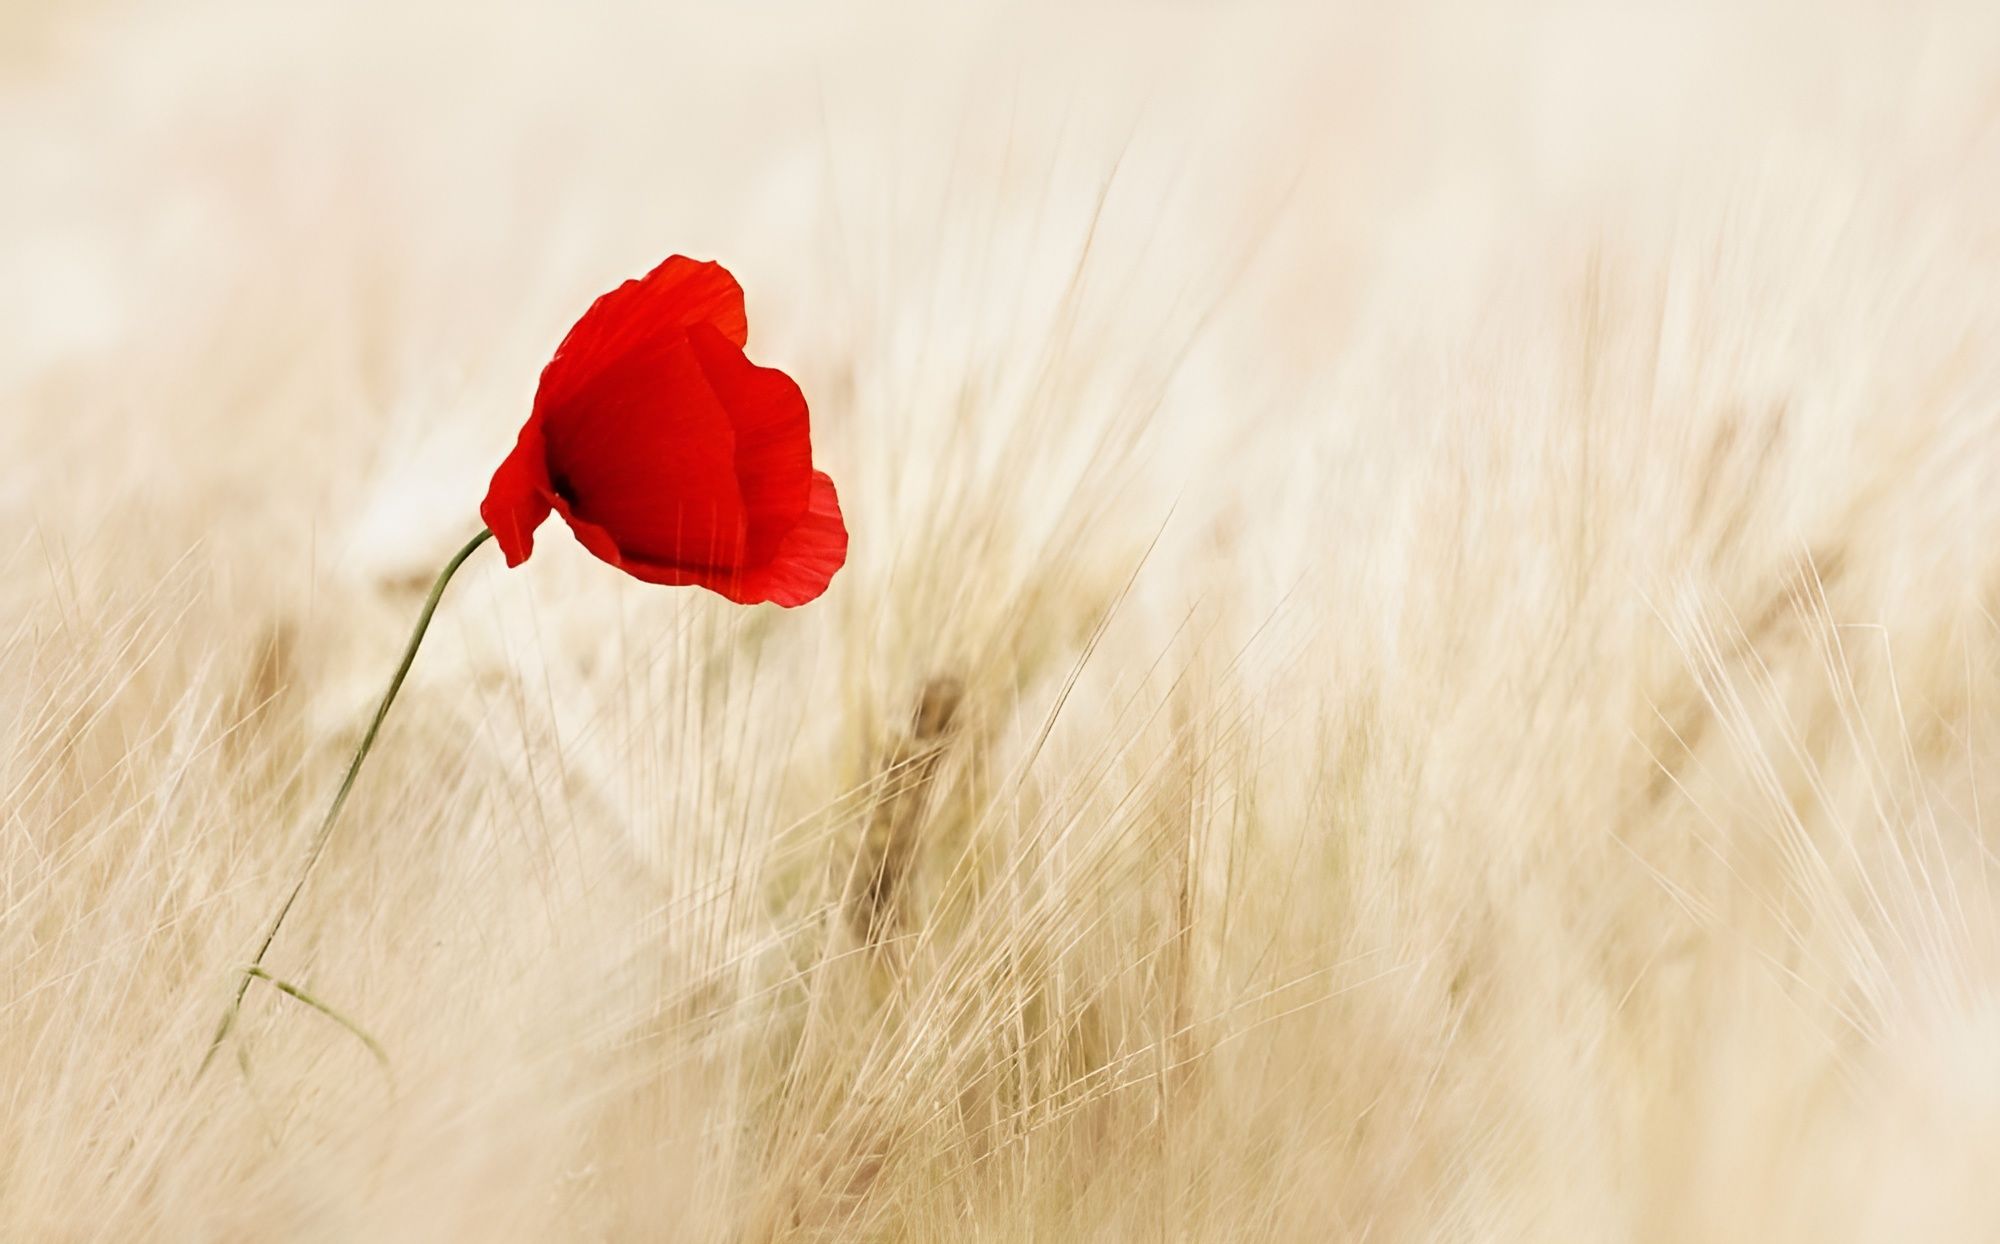 un coquelicot dans un champ de blé mur - Image par Ralf Kunze de Pixabay